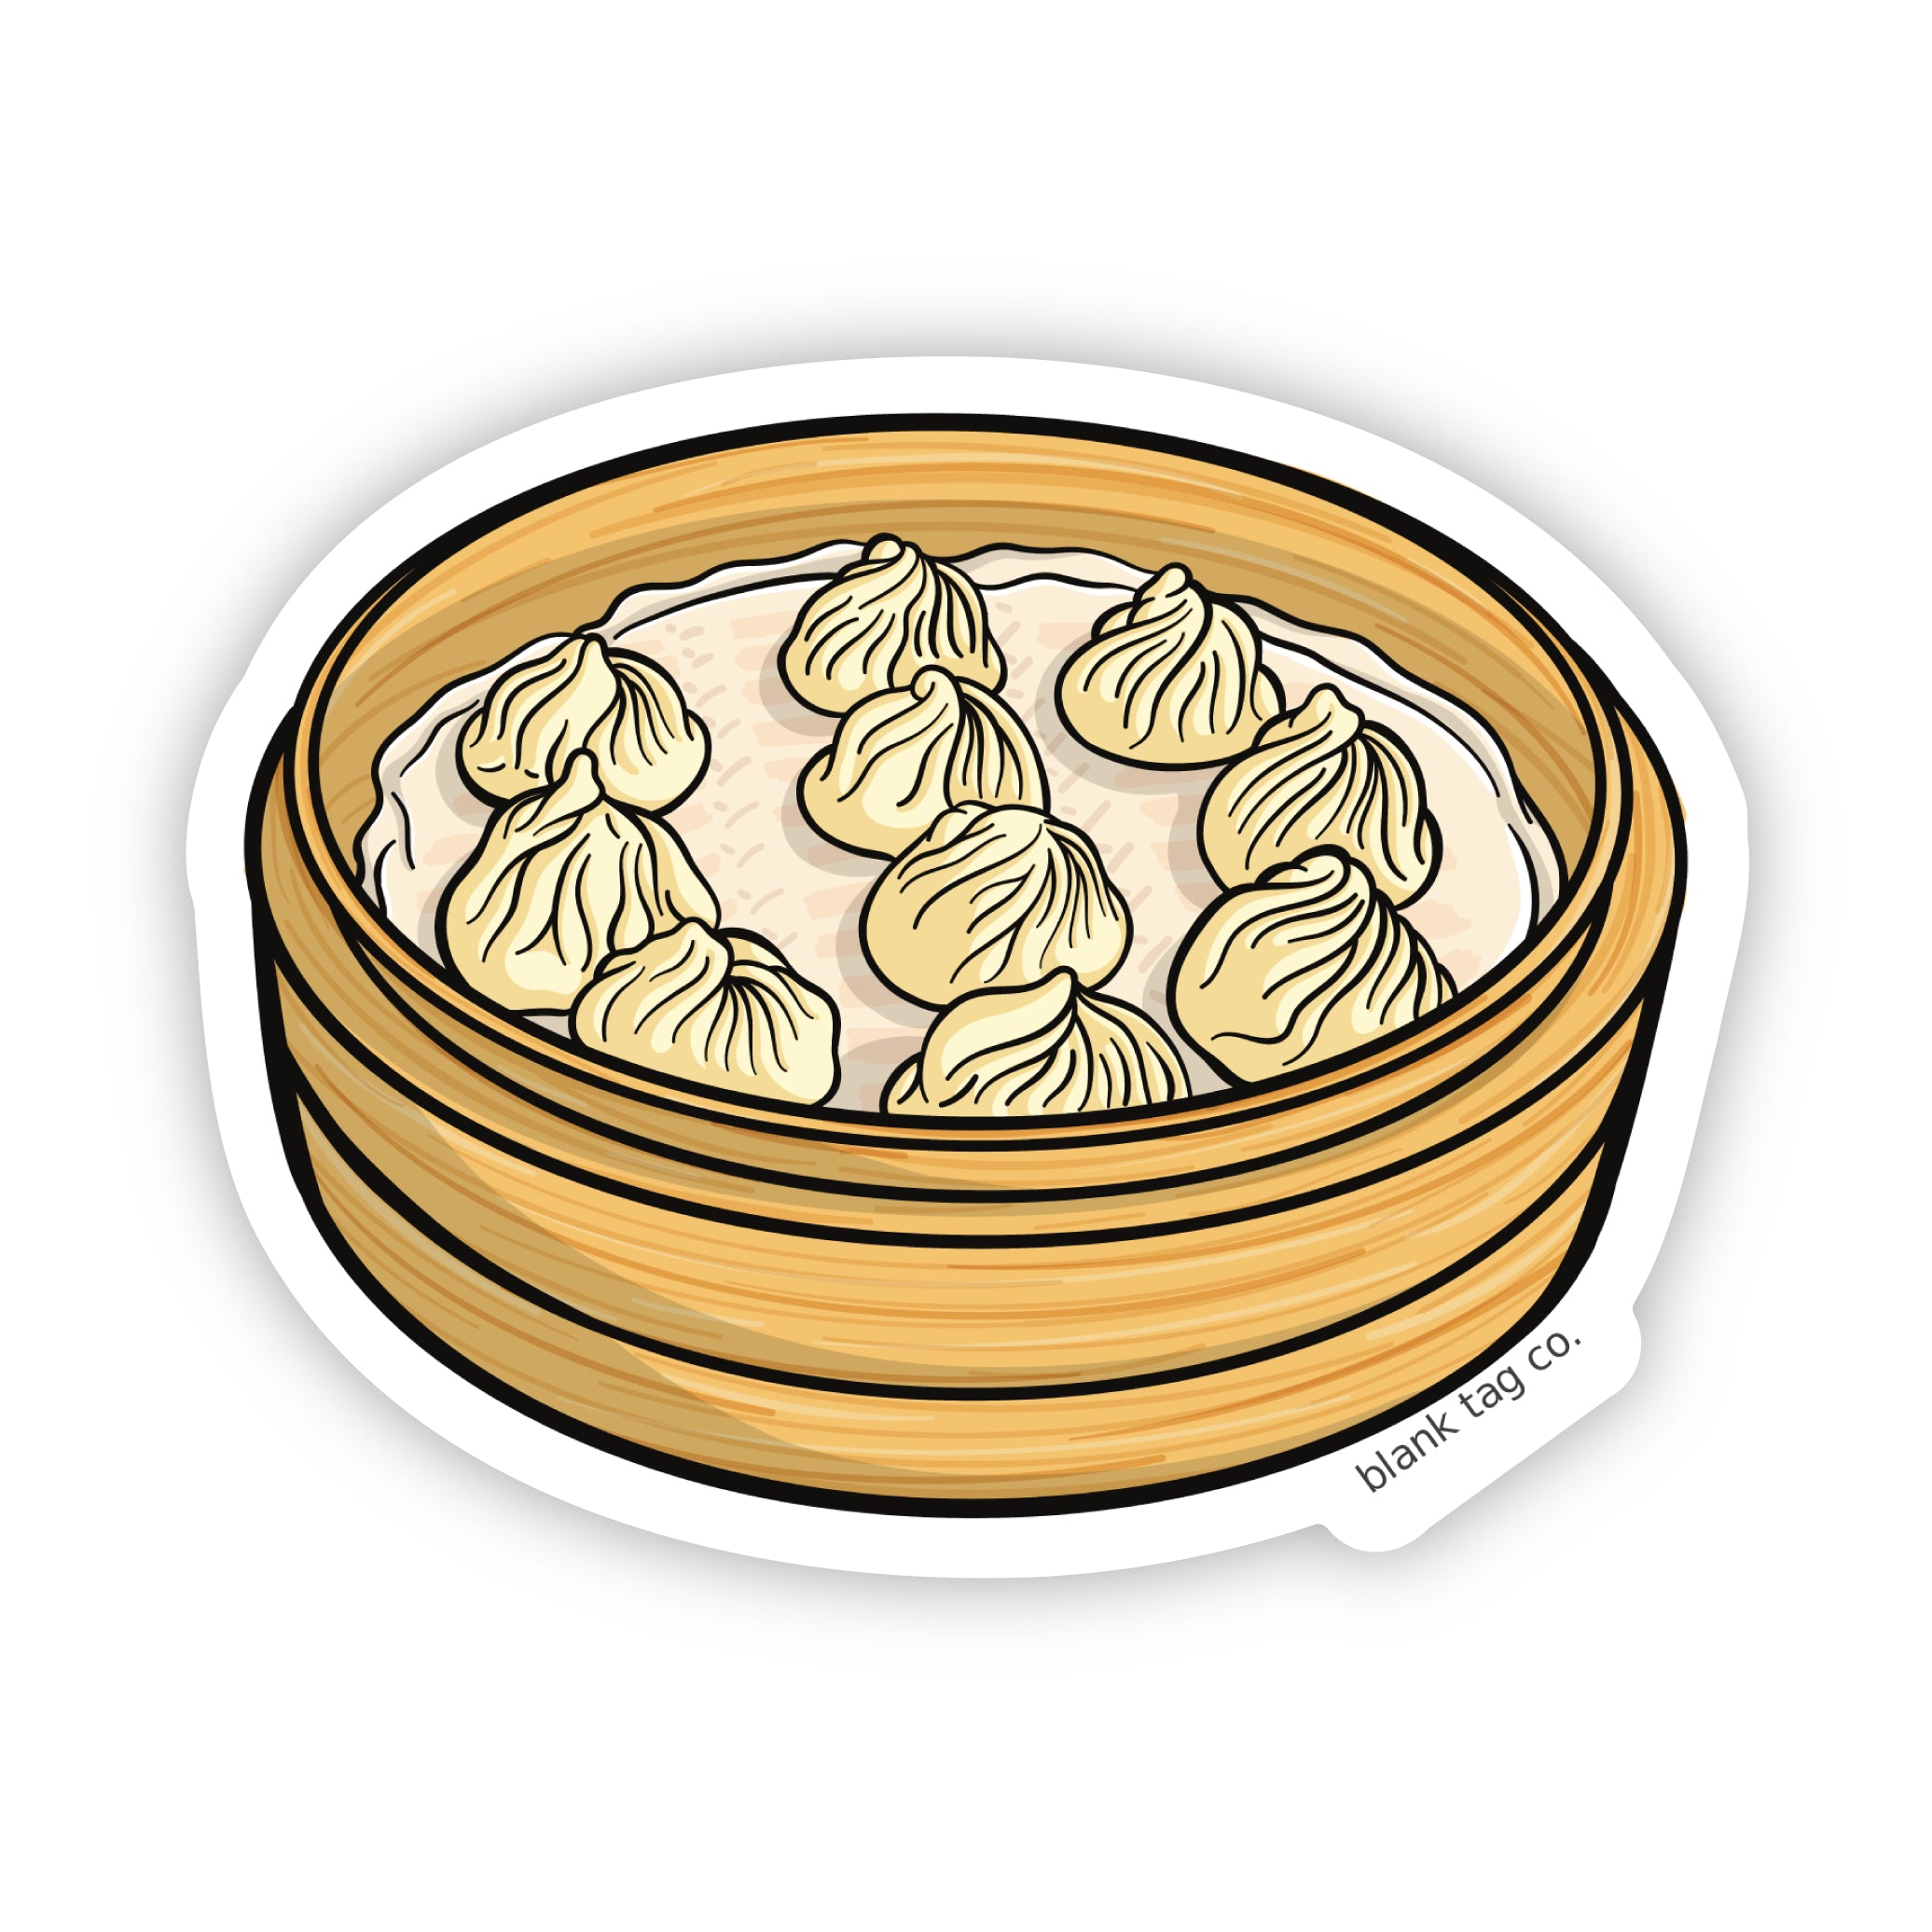 The Soup Dumplings Sticker